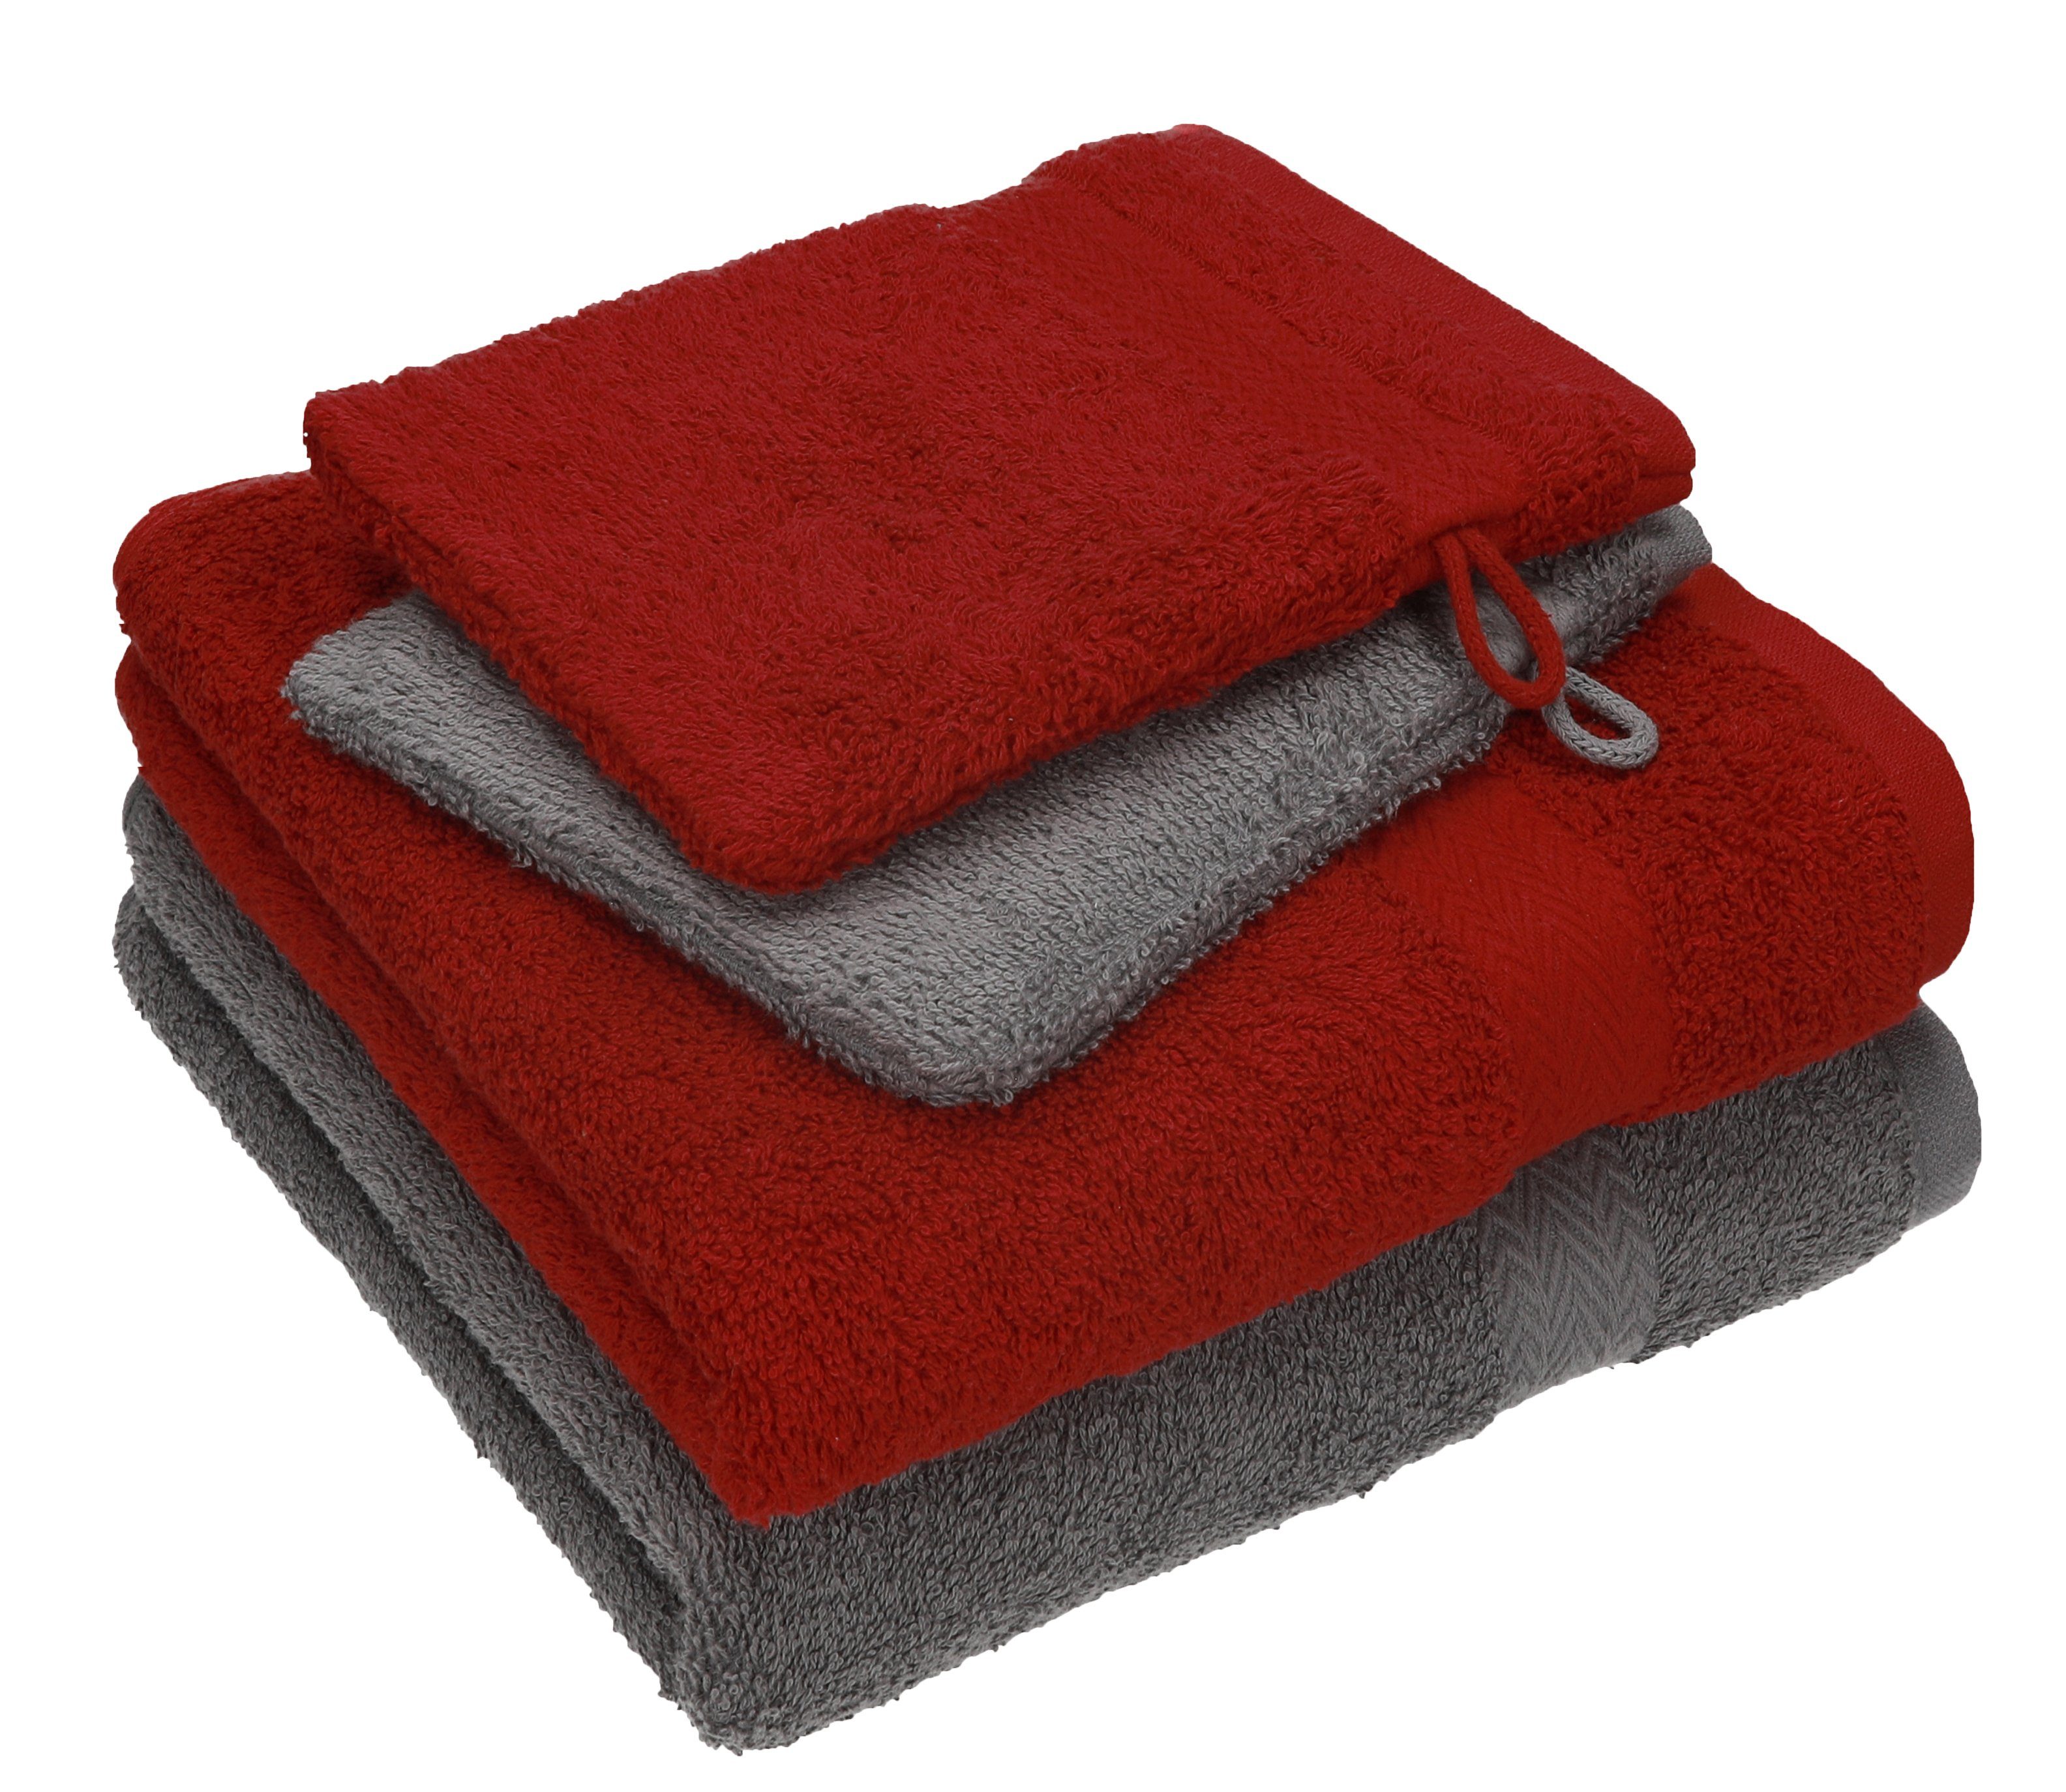 Betz Handtuch Set 4 Baumwolle Baumwolle 2 Pack TLG. anthrazit 2 100% 100% grau Happy Handtuch rubinrot Set - Waschhandschuhe, Handtücher